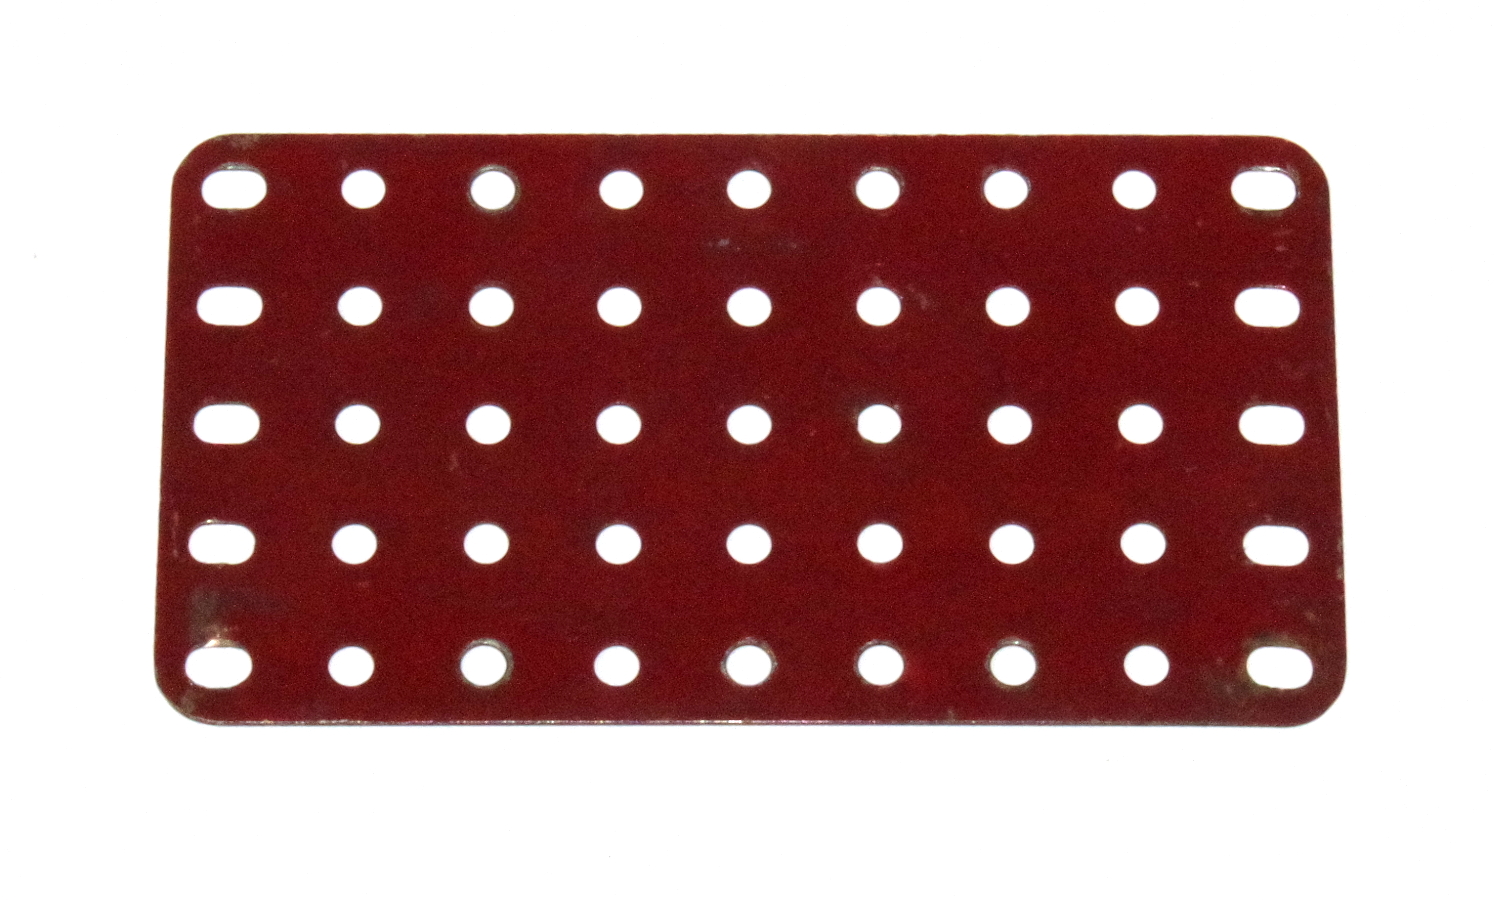 53a Flat Plate 9x5 Hole Dark Red Original